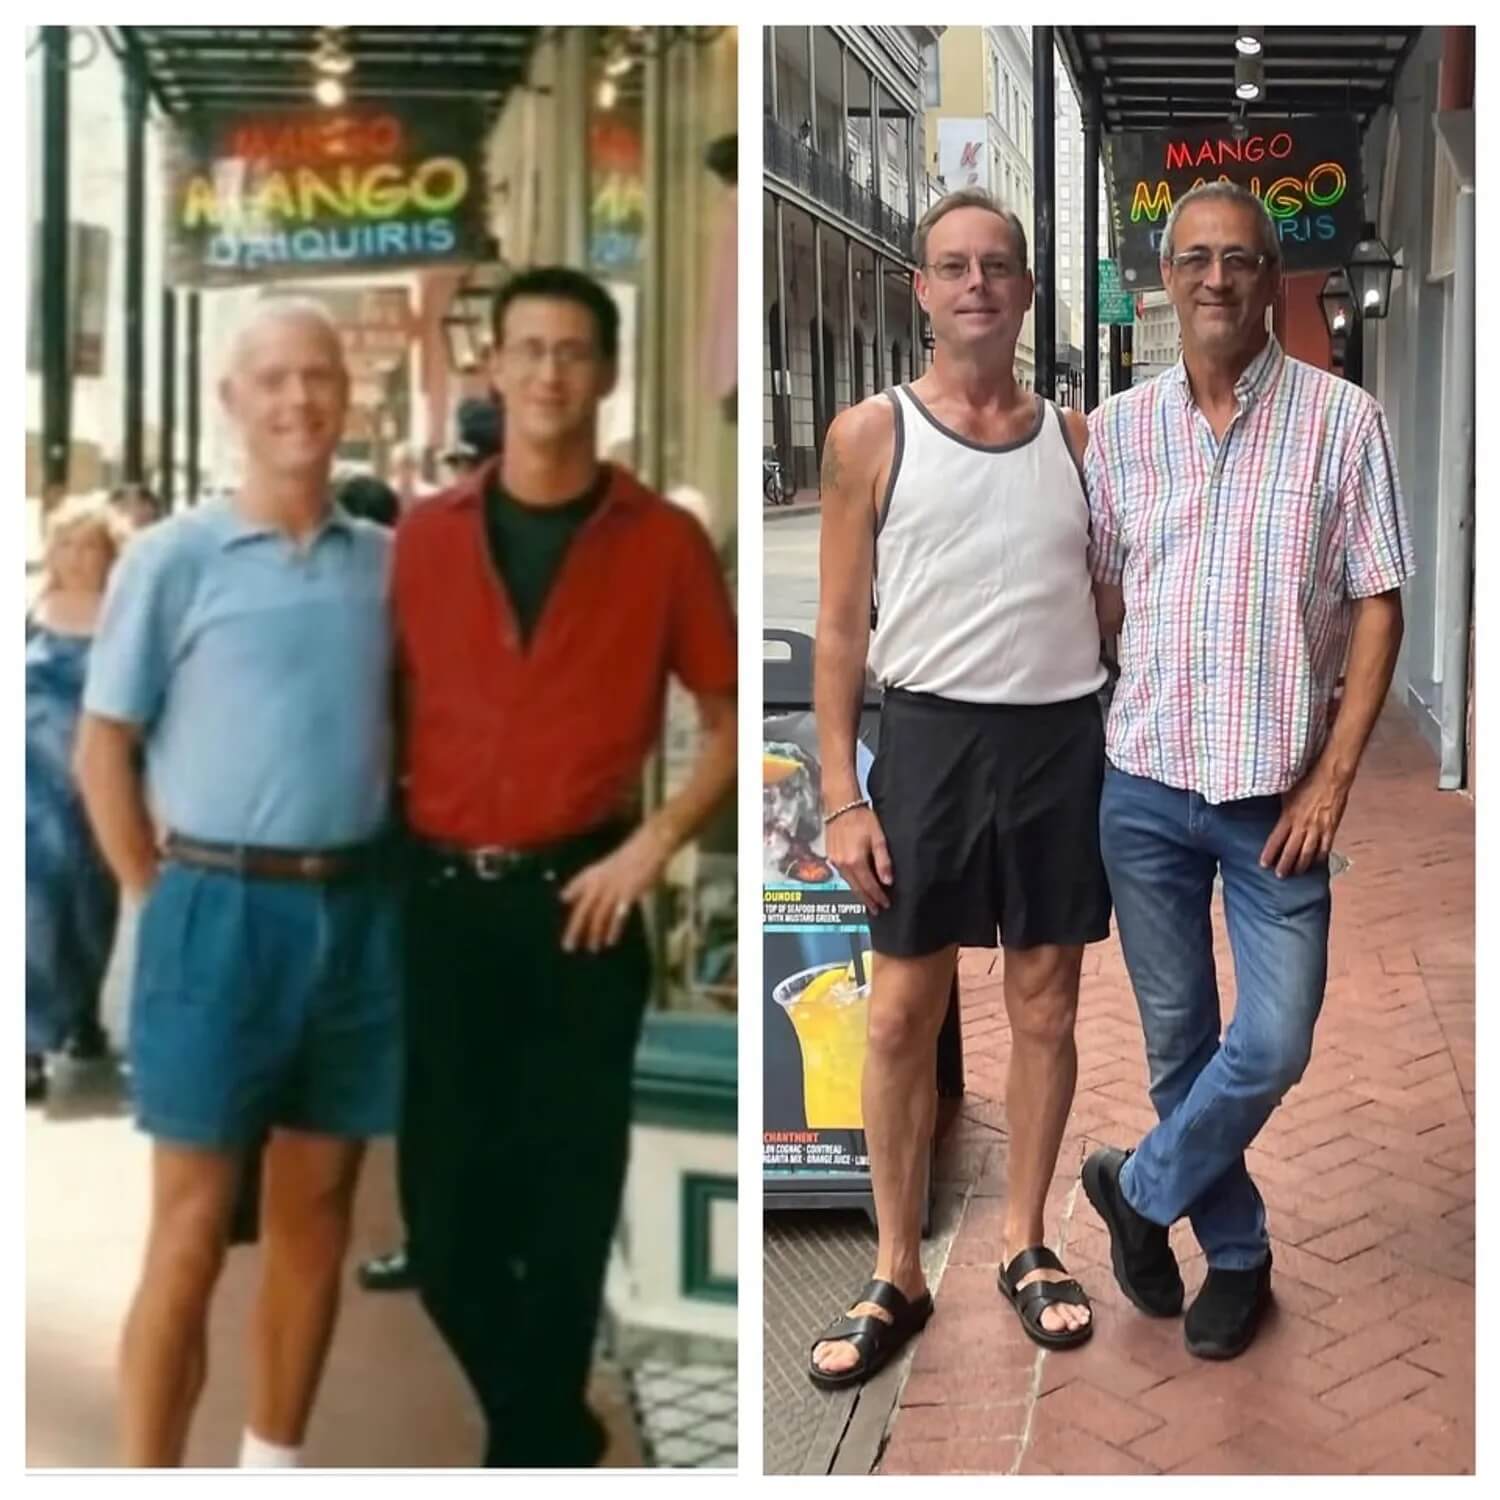 23 anni dopo ricreano la stessa foto per far credere a tuttə noi nell’amore - Jim McKenrick e Rick Sanchez - Gay.it